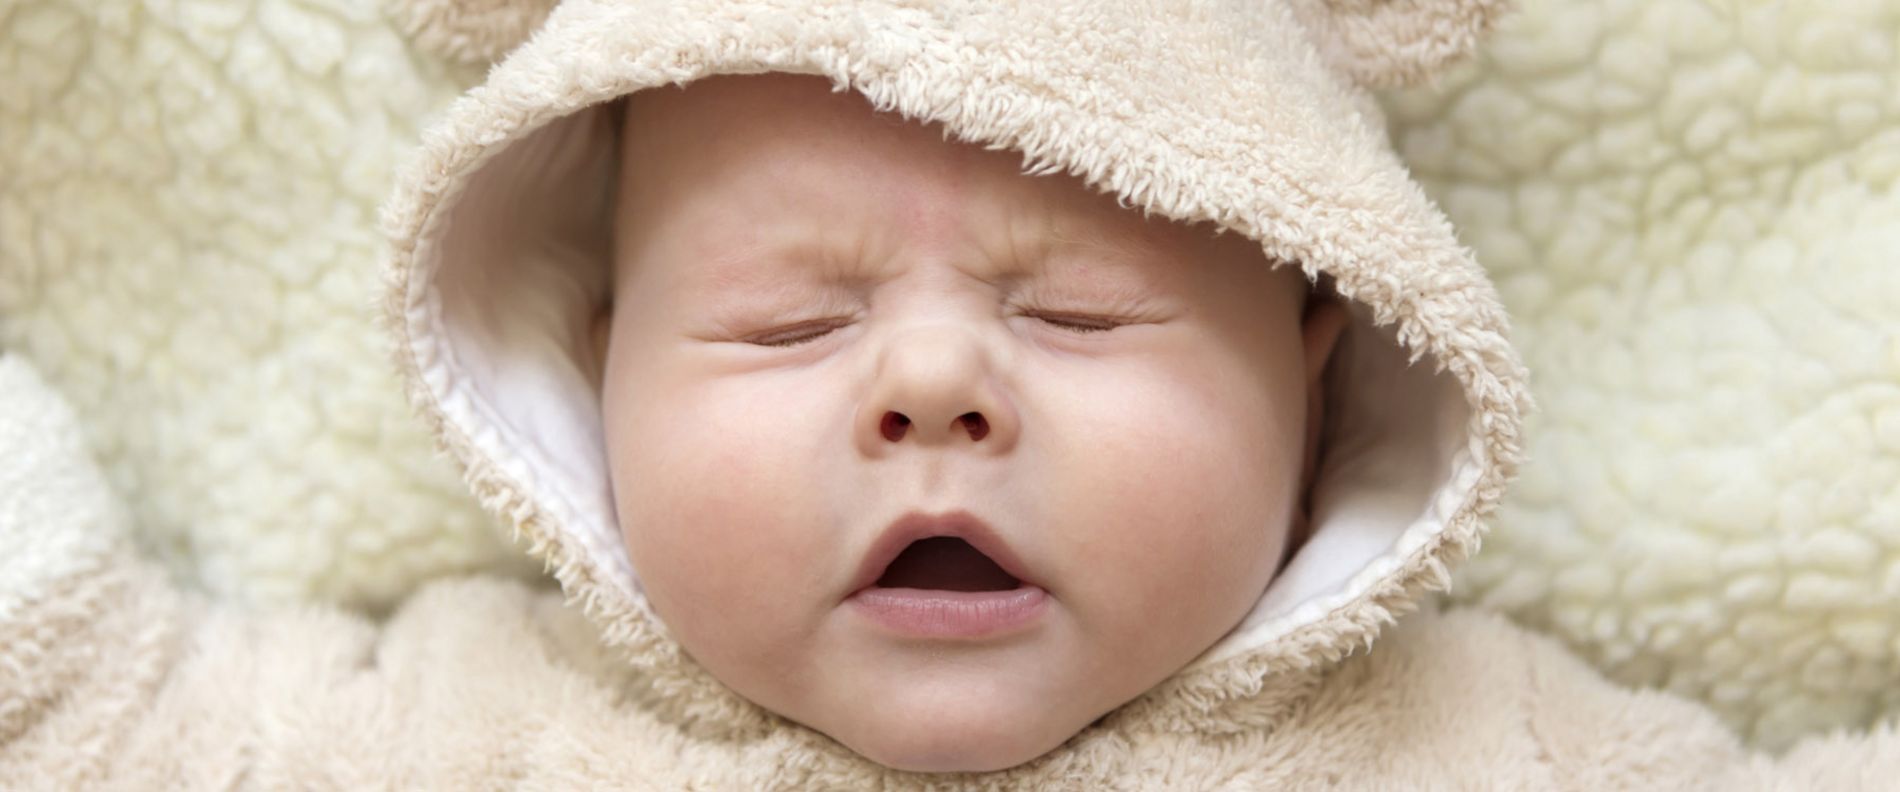 Kleinkind nießt, Symbolbild Immunsystem bei Neugeborenen